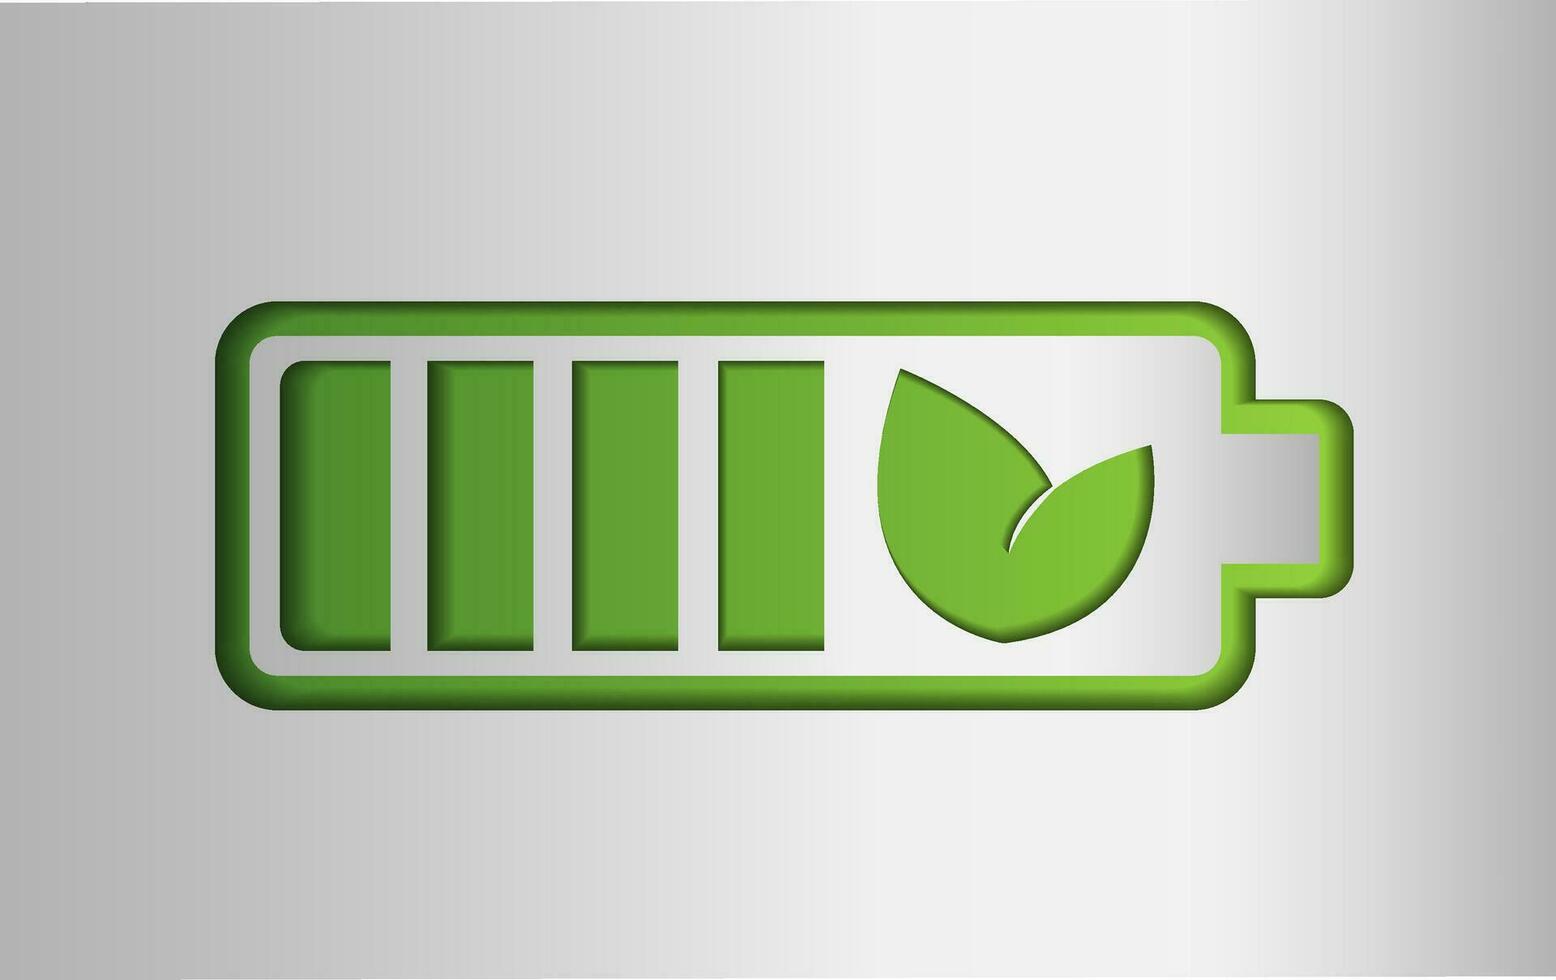 Batterie, wiederaufladbar, Logo mit Grün Blatt, sauber Grün Energie Symbol, Ladegerät, Vektor Illustration auf Silber Hintergrund im Papier Schnitt Stil